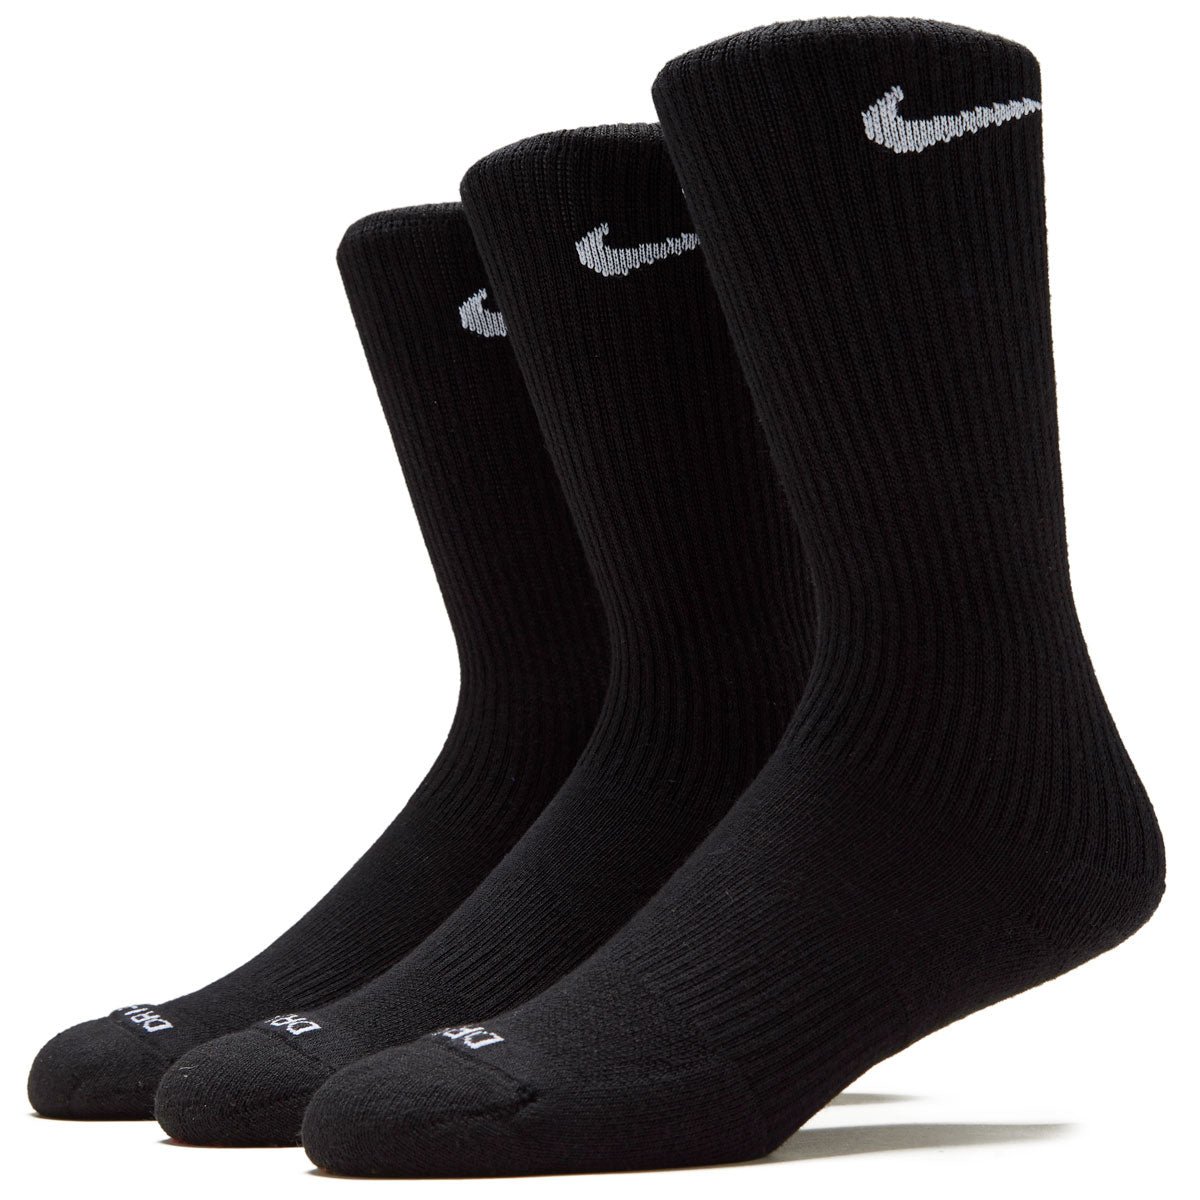 Nike SB Everyday Plus Cushioned 3 Pack of Socks - Black/White image 1